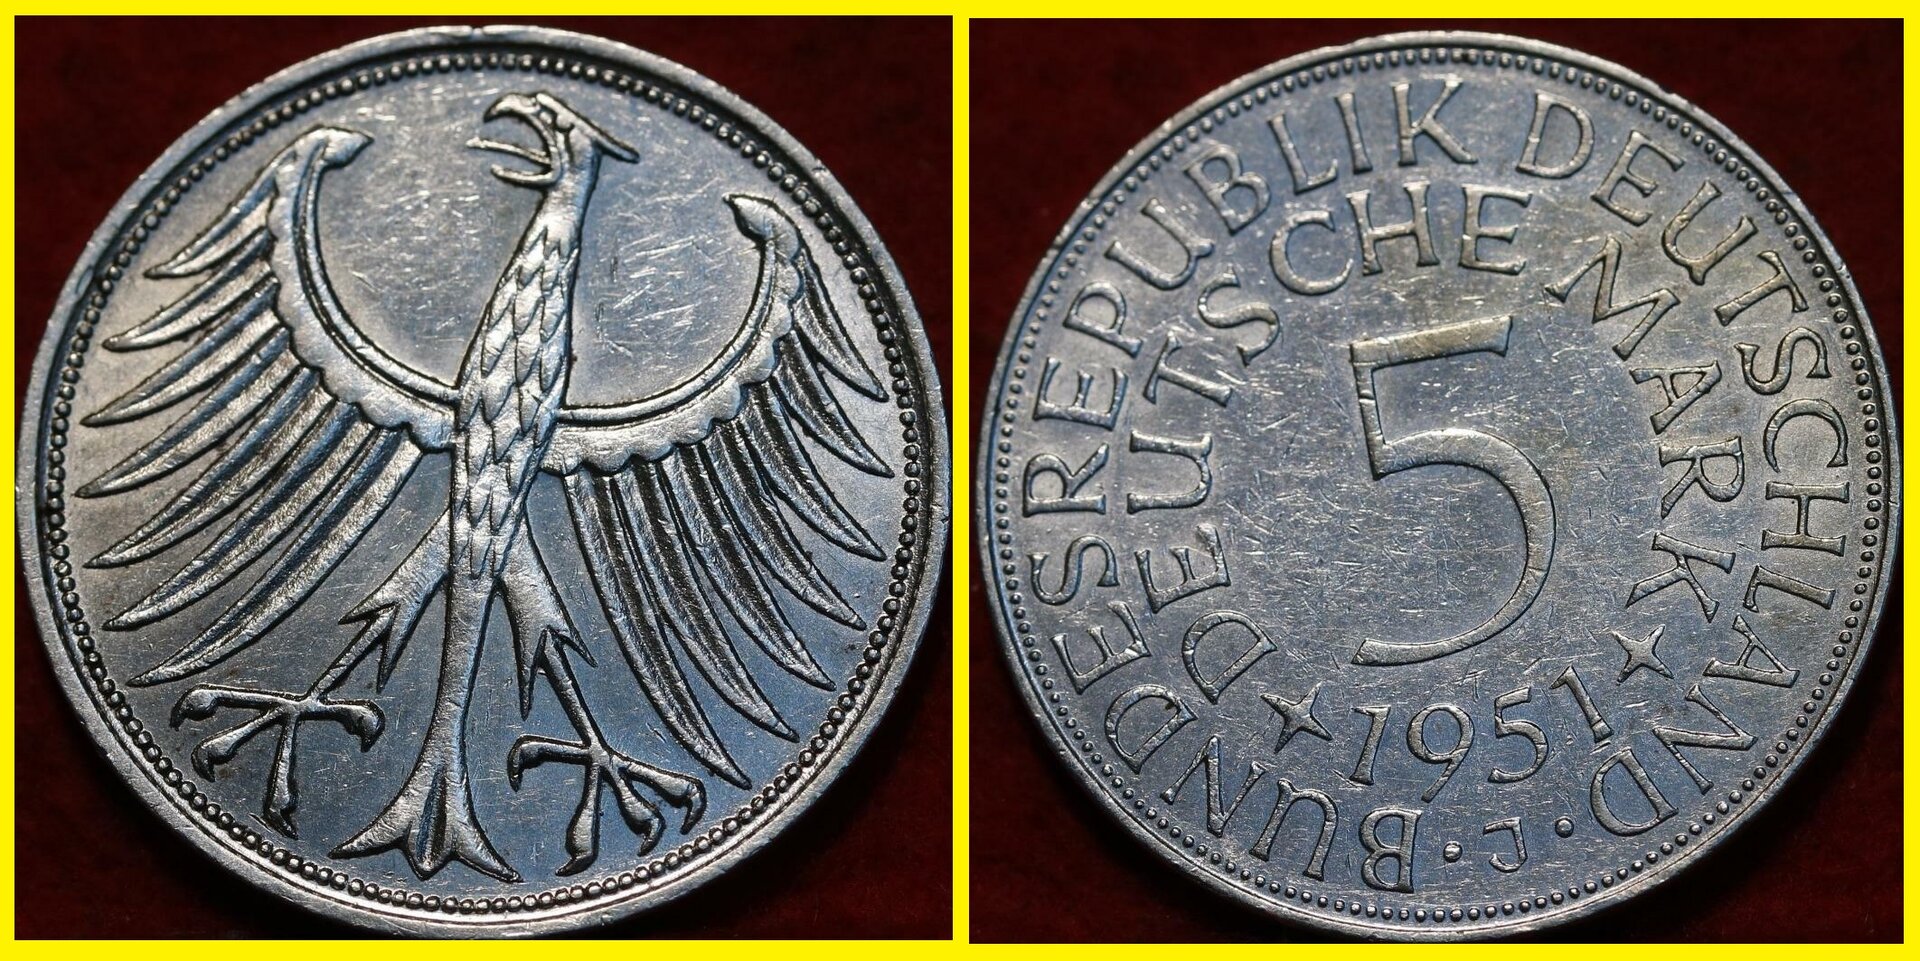 1951-J Germany 5 Mark Silver Coin  $8.01 + $2.  vette1986  352579956586 .jpg